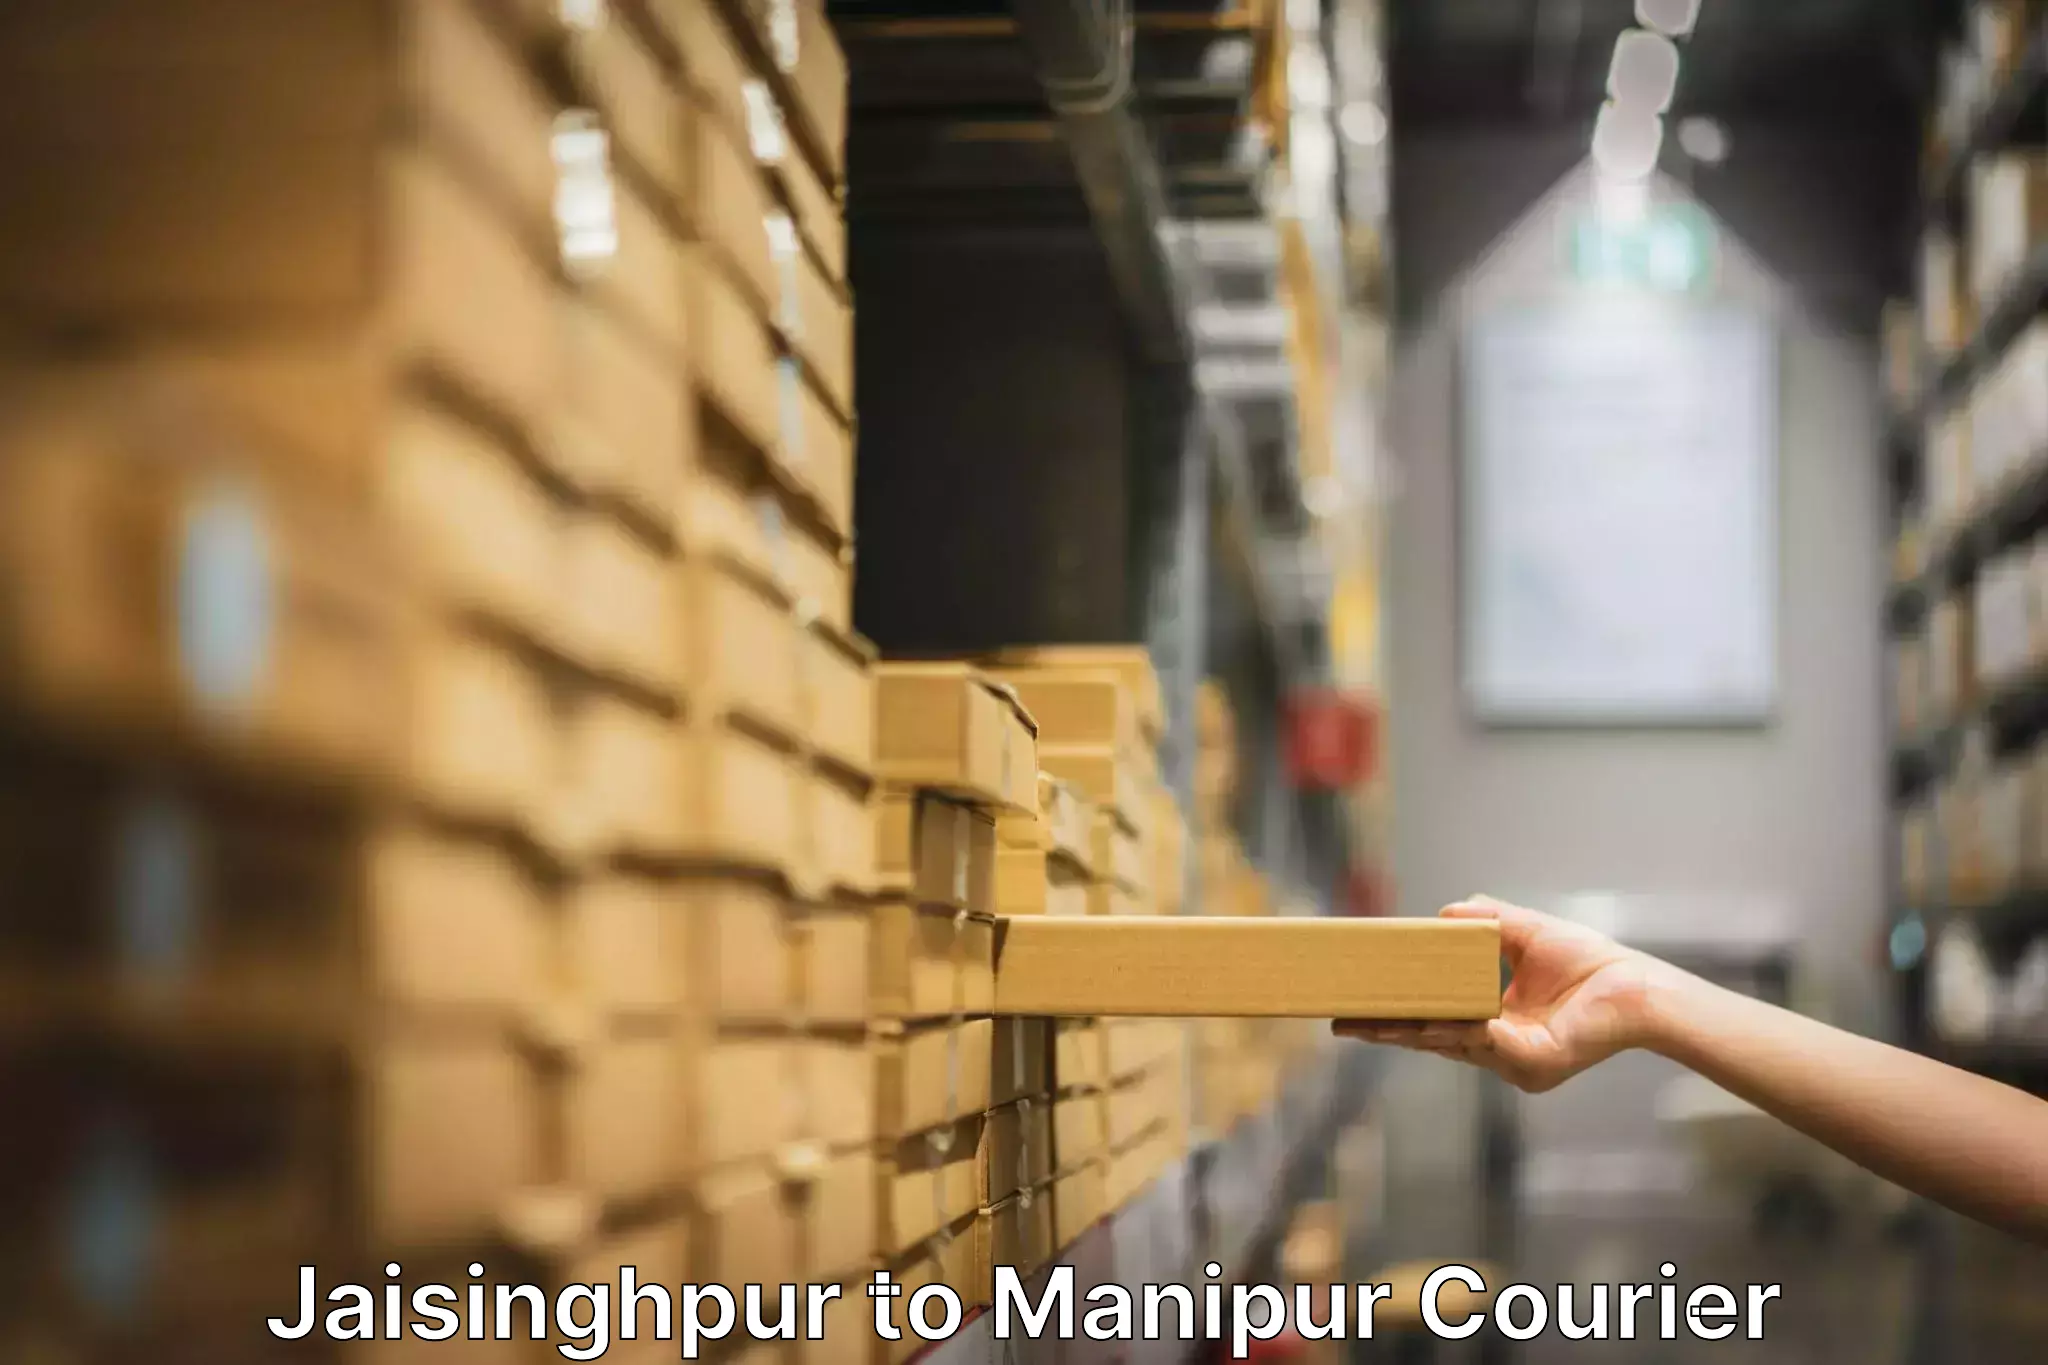 Reliable furniture transport in Jaisinghpur to IIIT Senapati